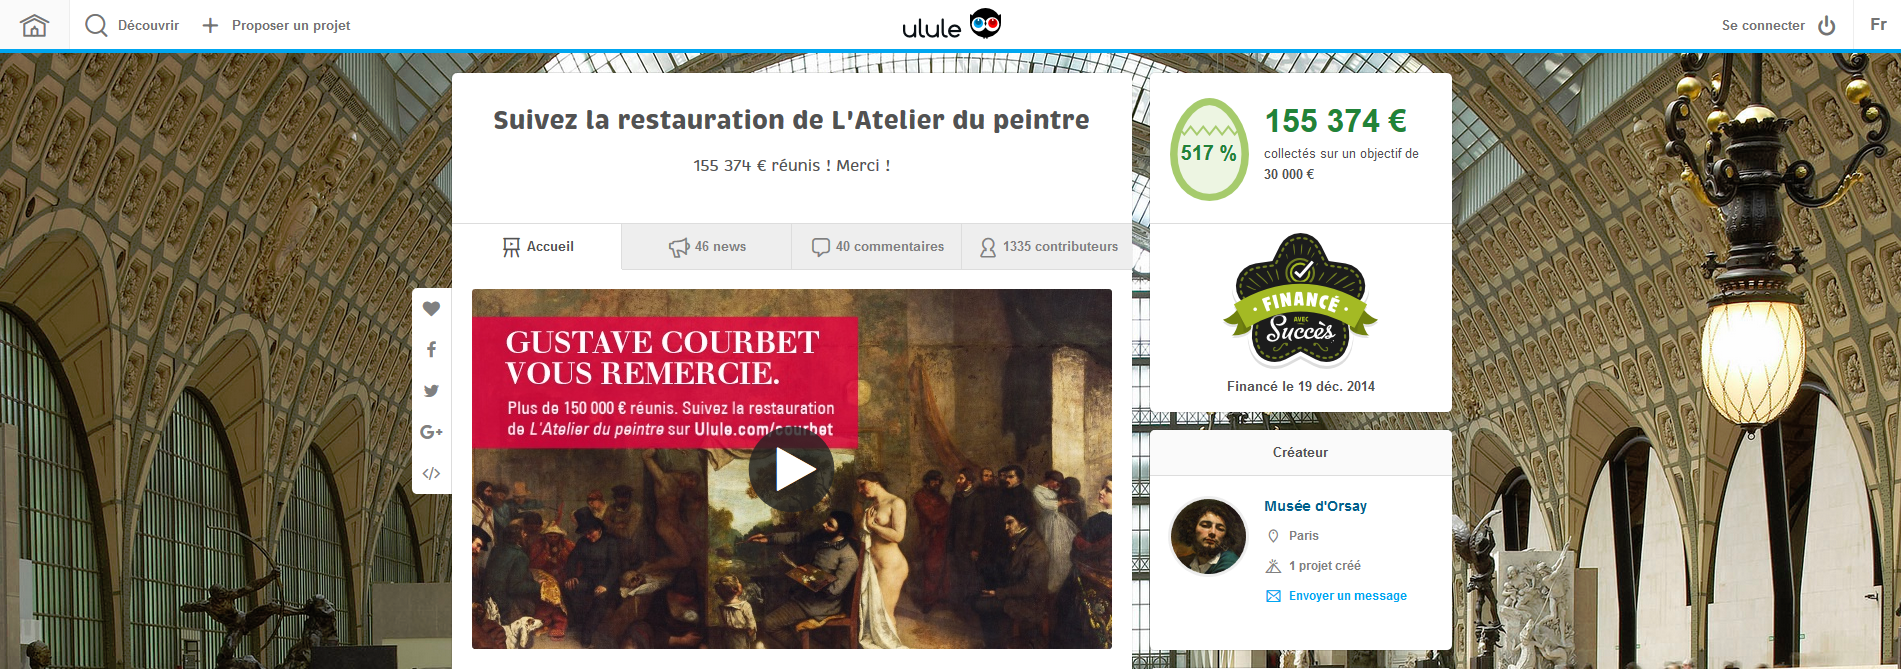 FireShot Screen Capture #192 - 'Suivez la restauration de L'Atelier du peintre - Ulule' - fr_ulule_com_courbet